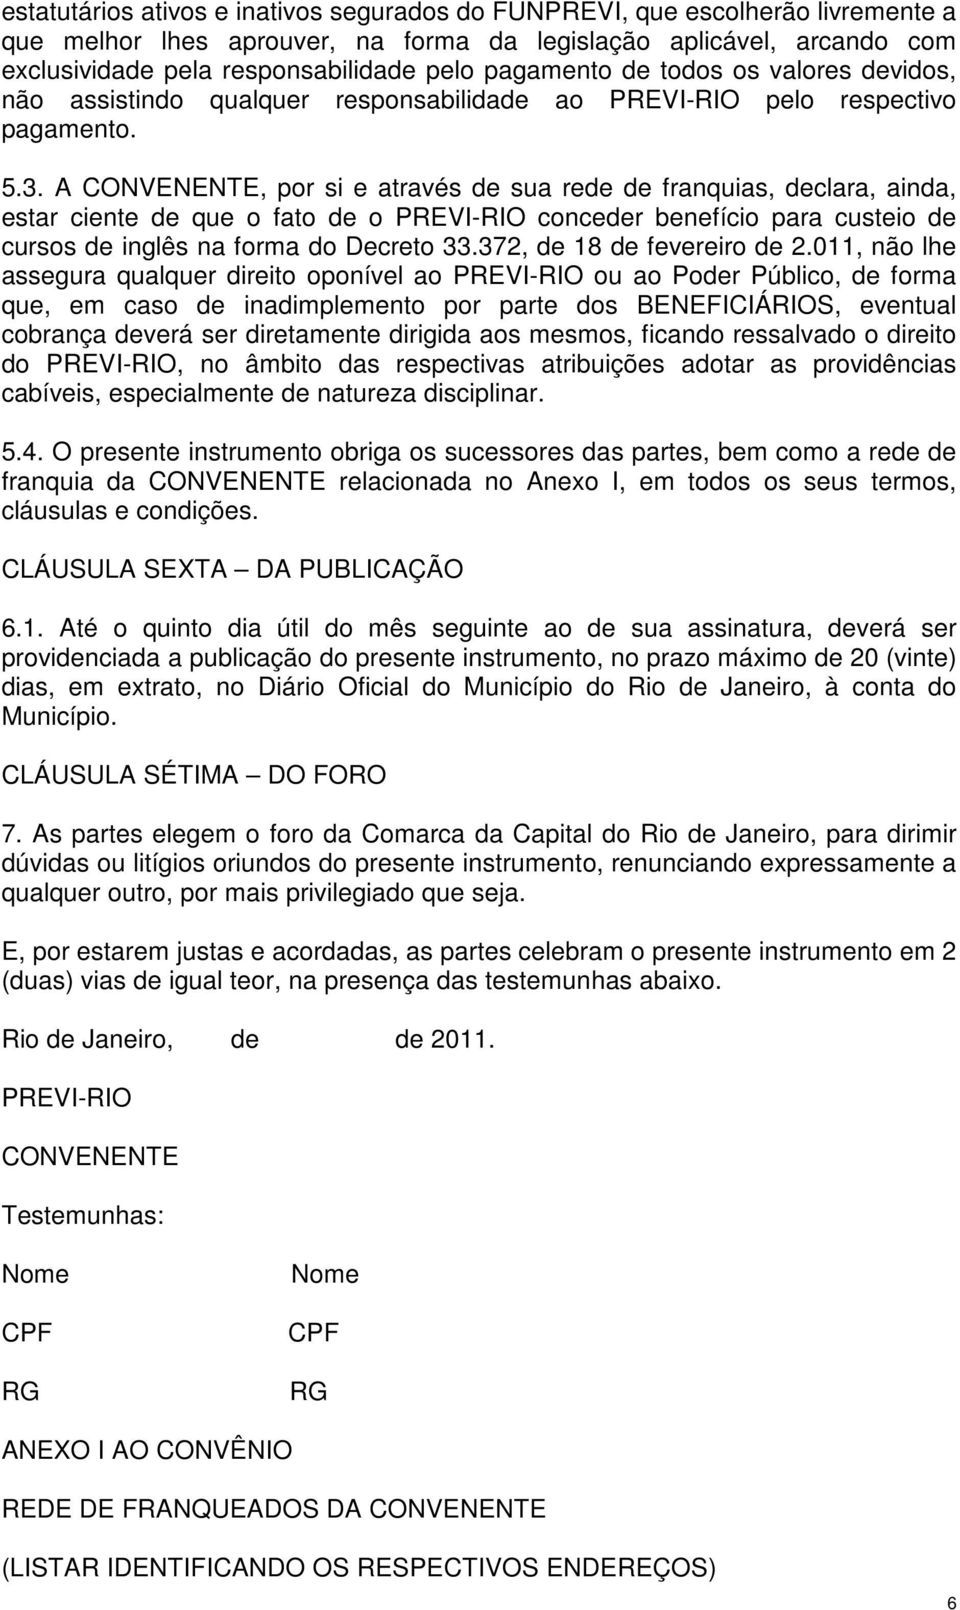 A CONVENENTE, por si e através de sua rede de franquias, declara, ainda, estar ciente de que o fato de o PREVI-RIO conceder benefício para custeio de cursos de inglês na forma do Decreto 33.